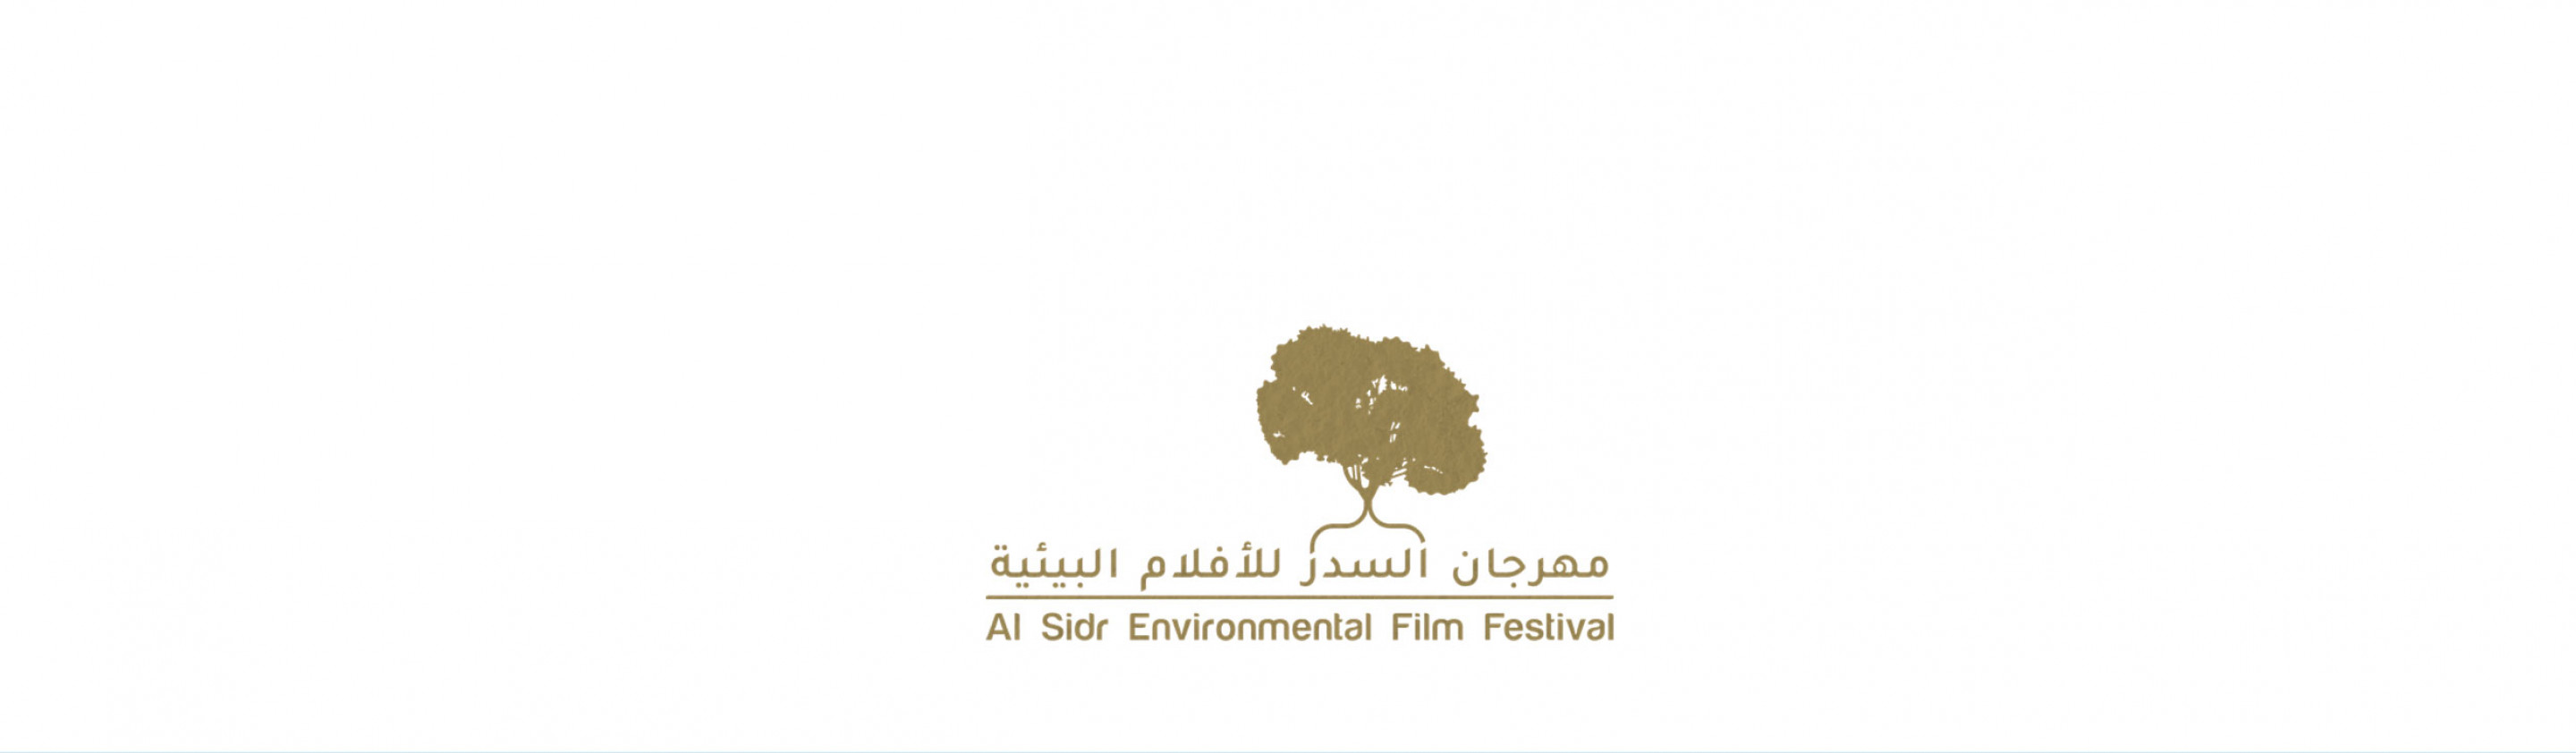 Al Sidr Environmental Film Festival [FREE]